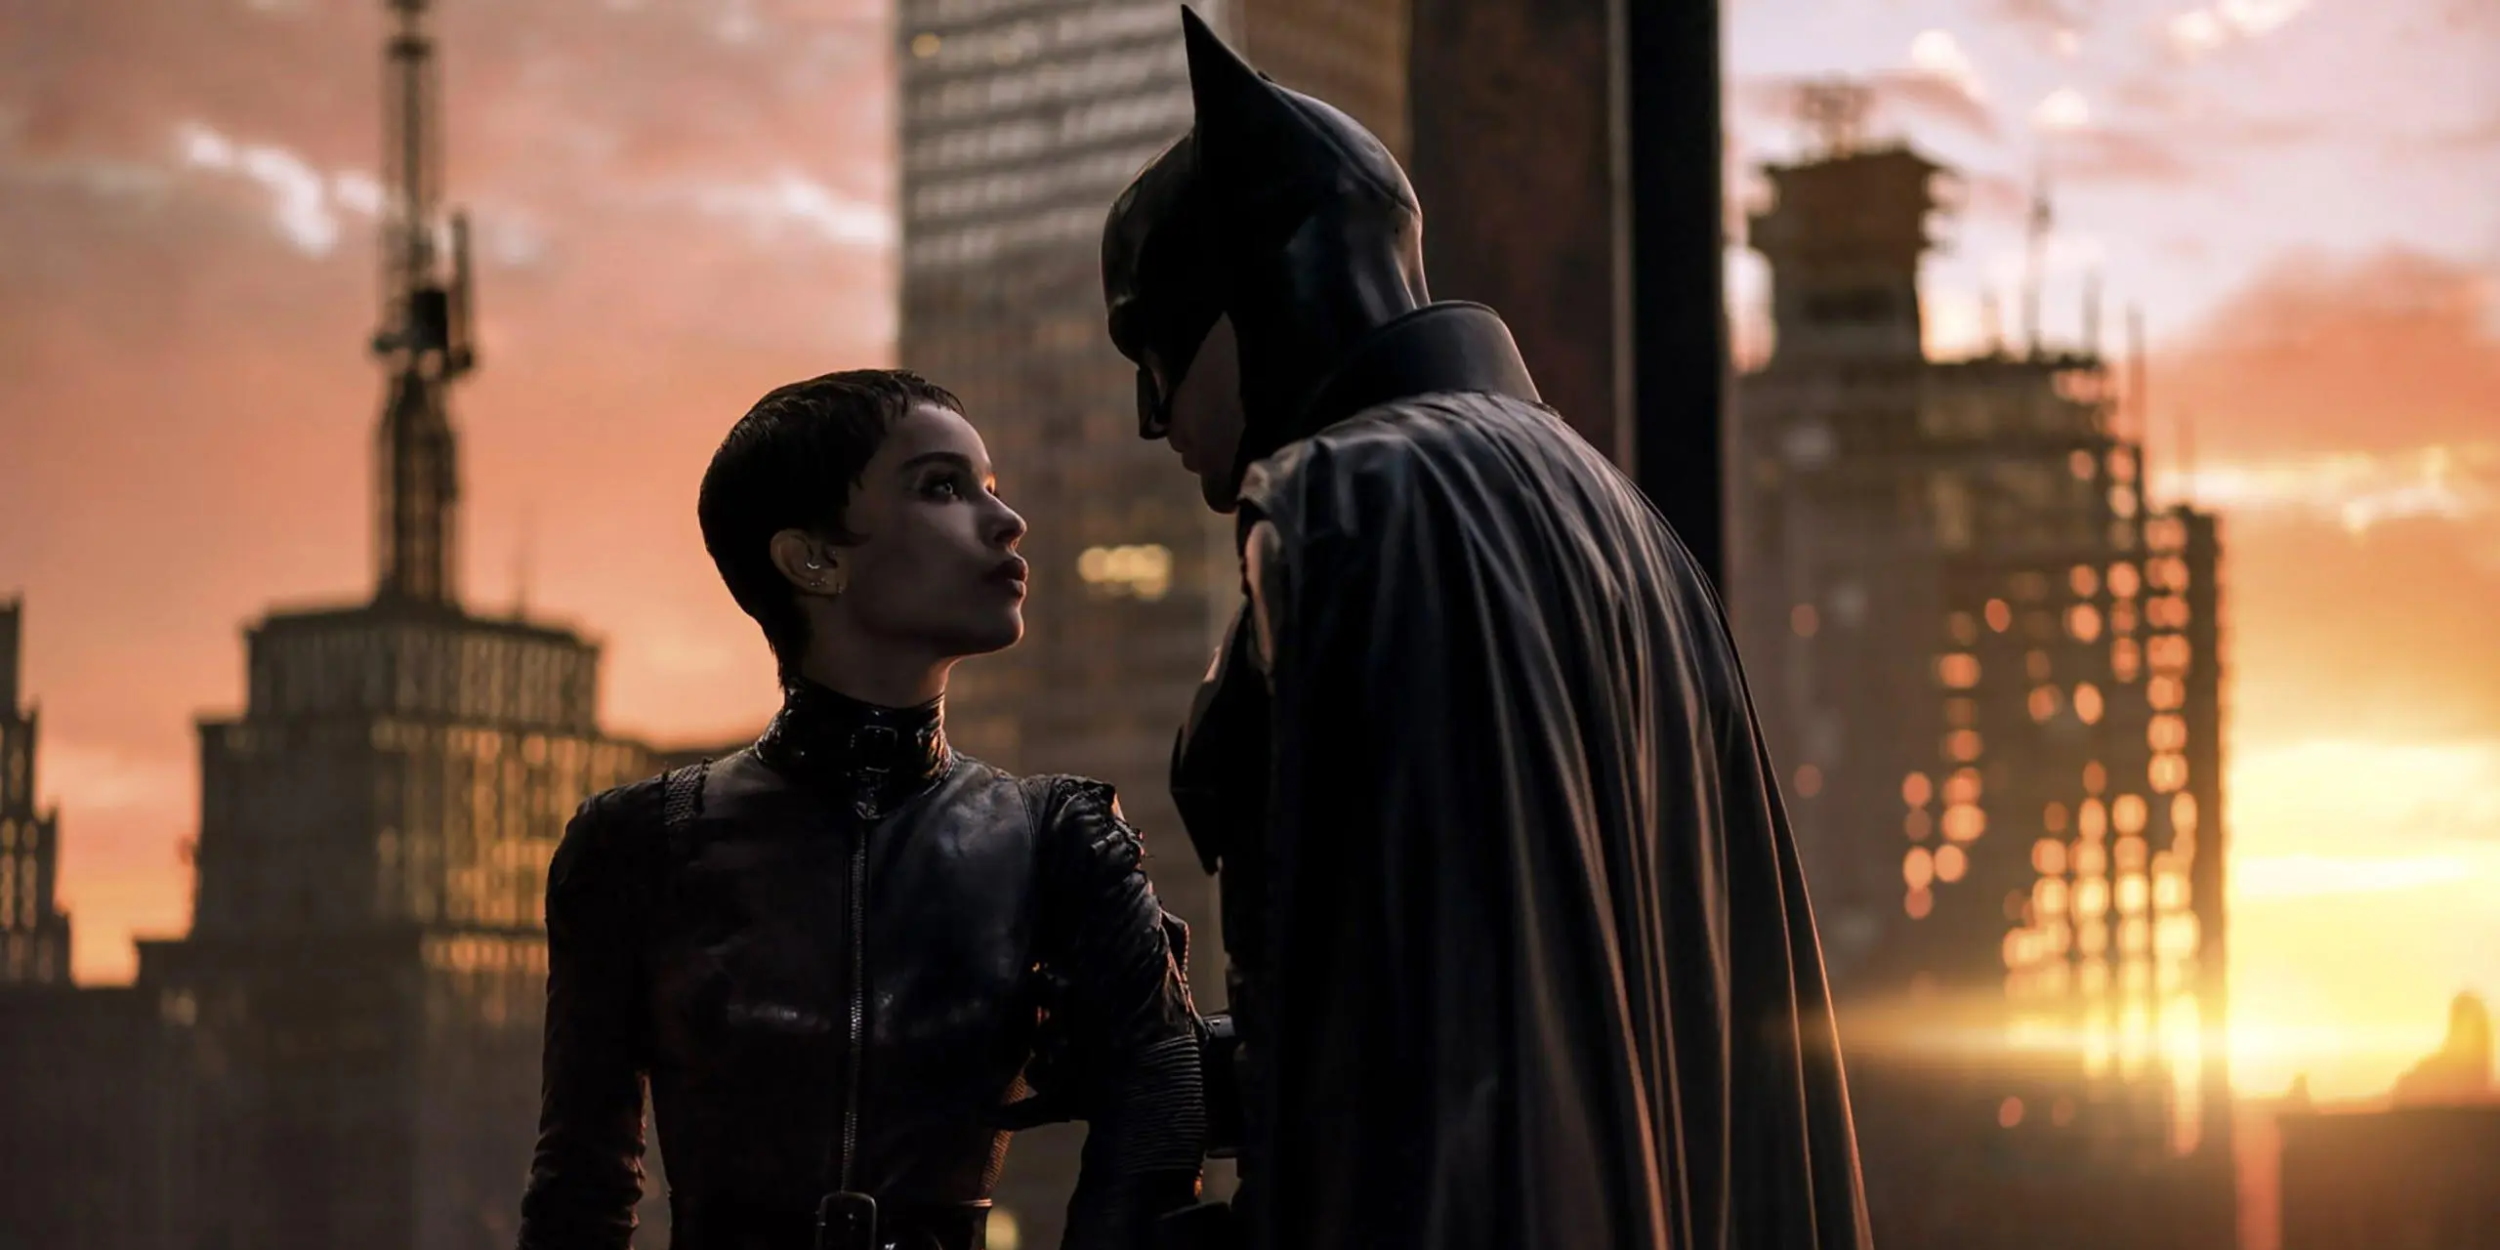 «Бэтмен» похож на фильмы Дэвида Финчера. Такой супергероики вы ещё не видели